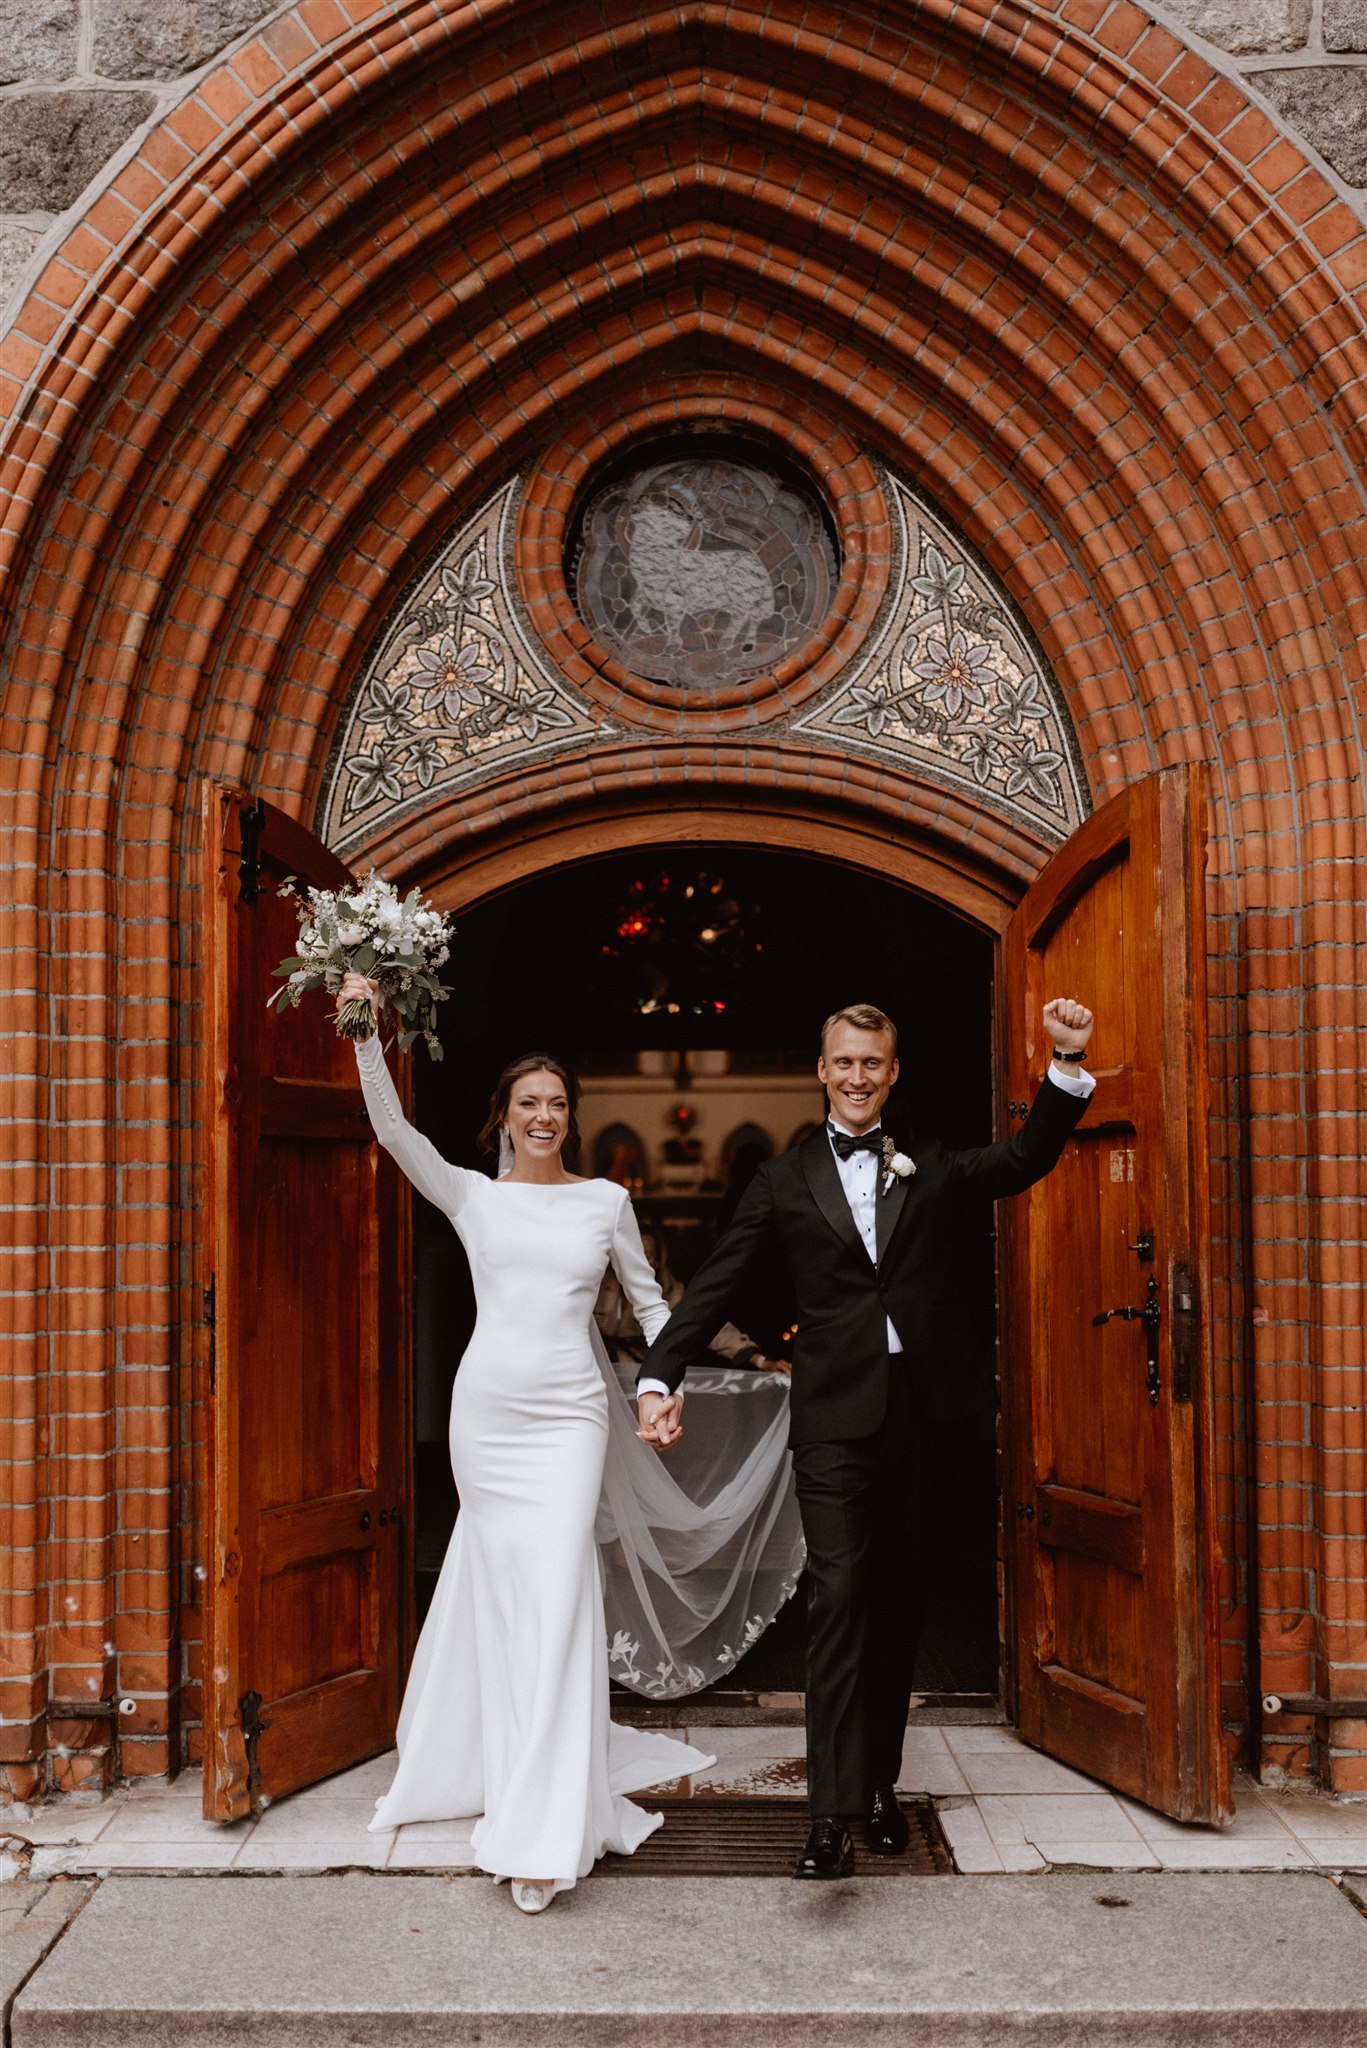 Nadia & Wiktor - bajkowy ślub - z Dubaju do Polski | Bogna Bojanowska Wedding Planner